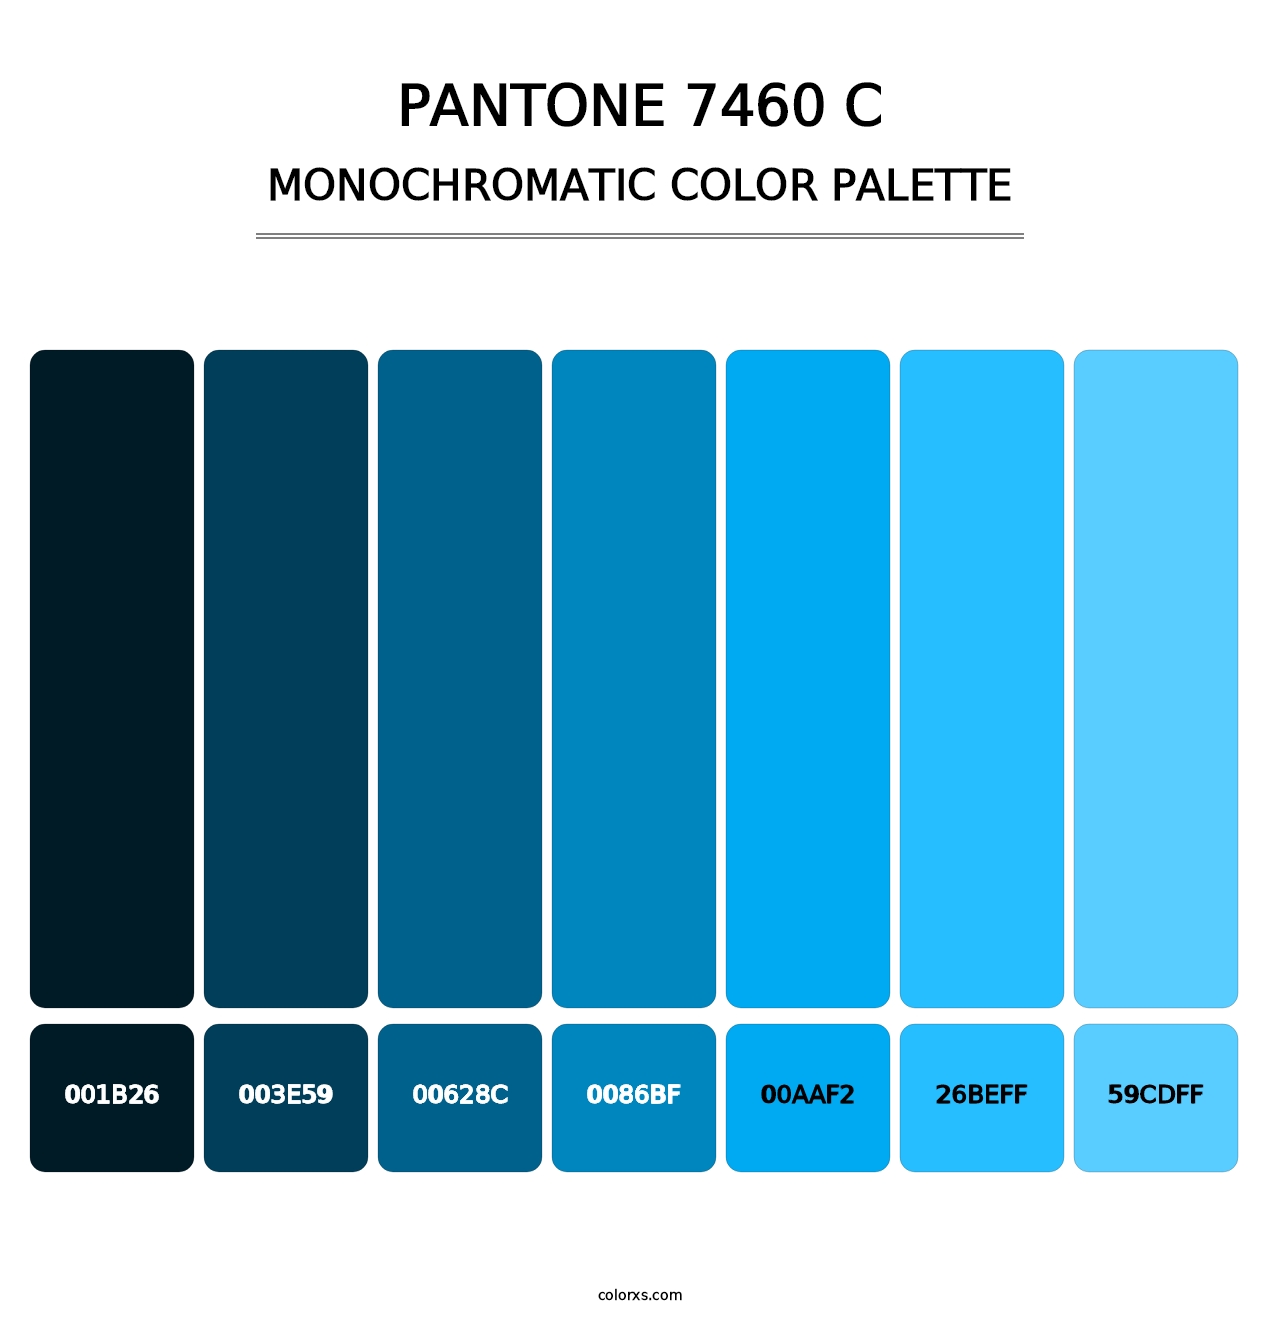 PANTONE 7460 C - Monochromatic Color Palette